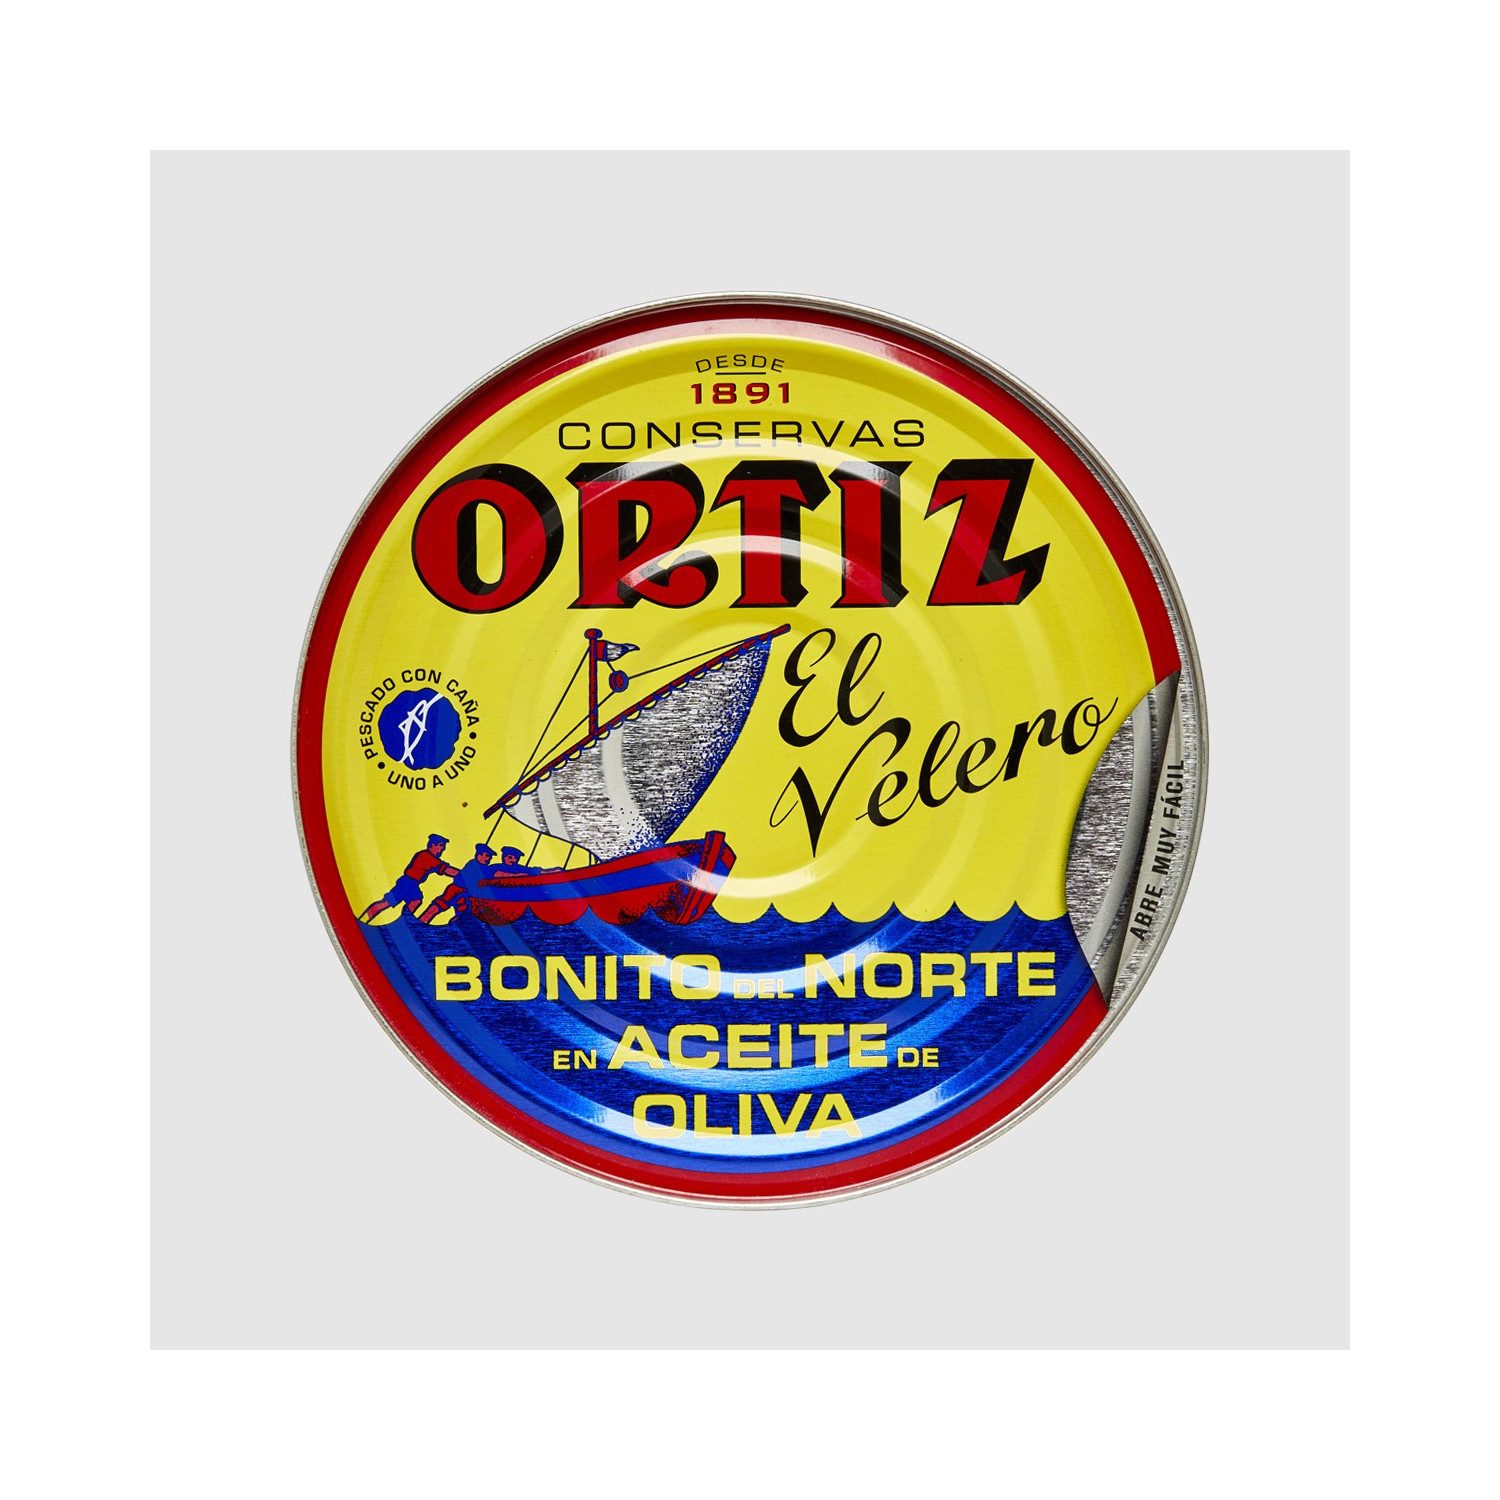 Bonito del Norte en aceite de oliva pescado con caña Oritz